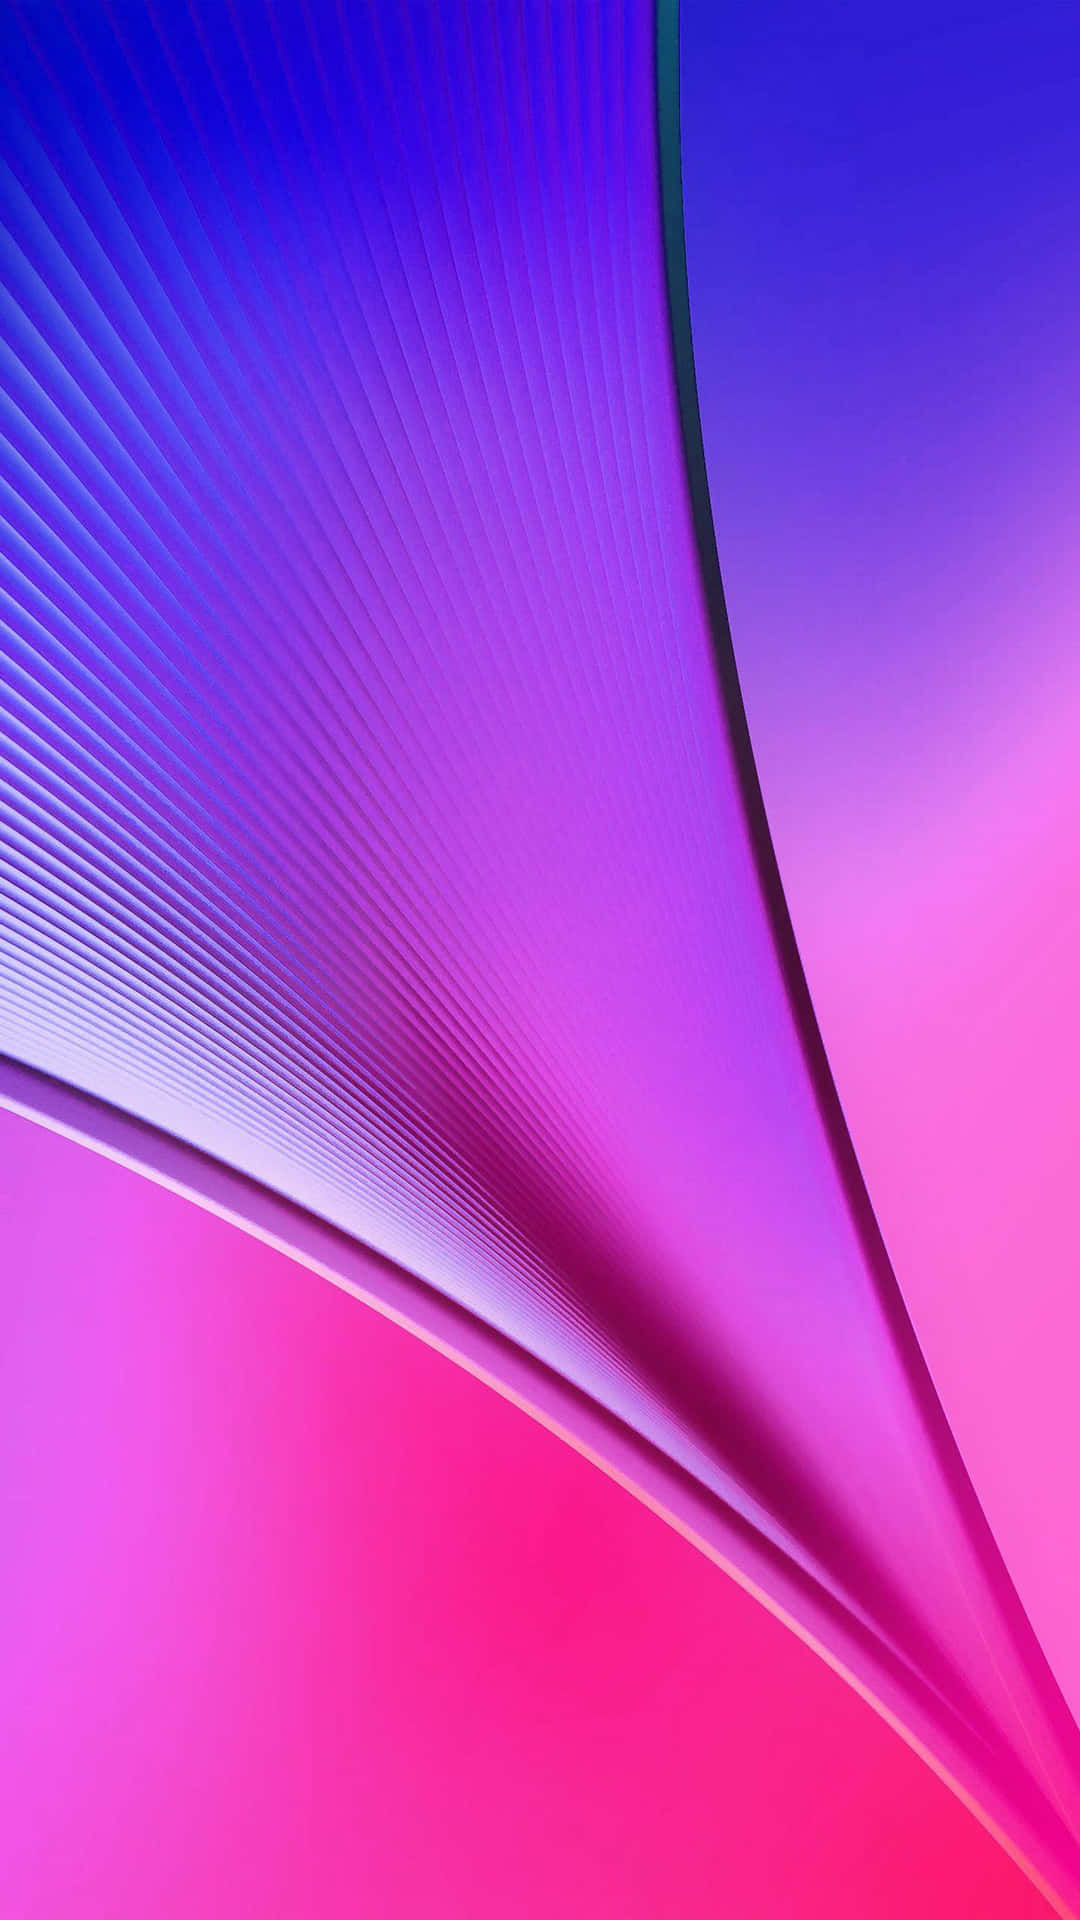 Bunterabstrakter Hintergrund In Pink Und Blau.